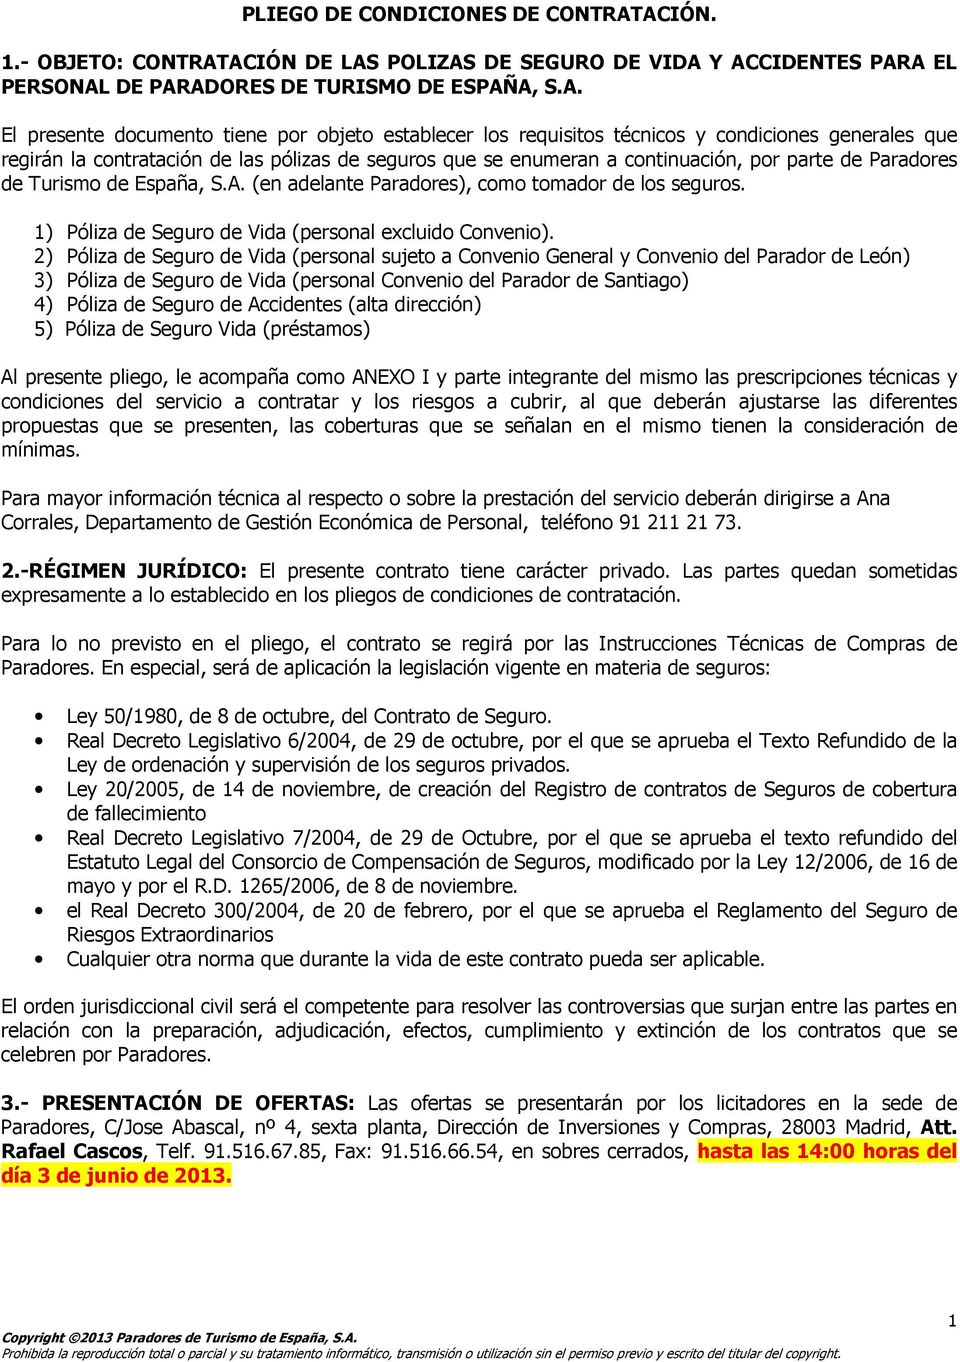 técnicos y condiciones generales que regirán la contratación de las pólizas de seguros que se enumeran a continuación, por parte de Paradores de Turismo de España, S.A.